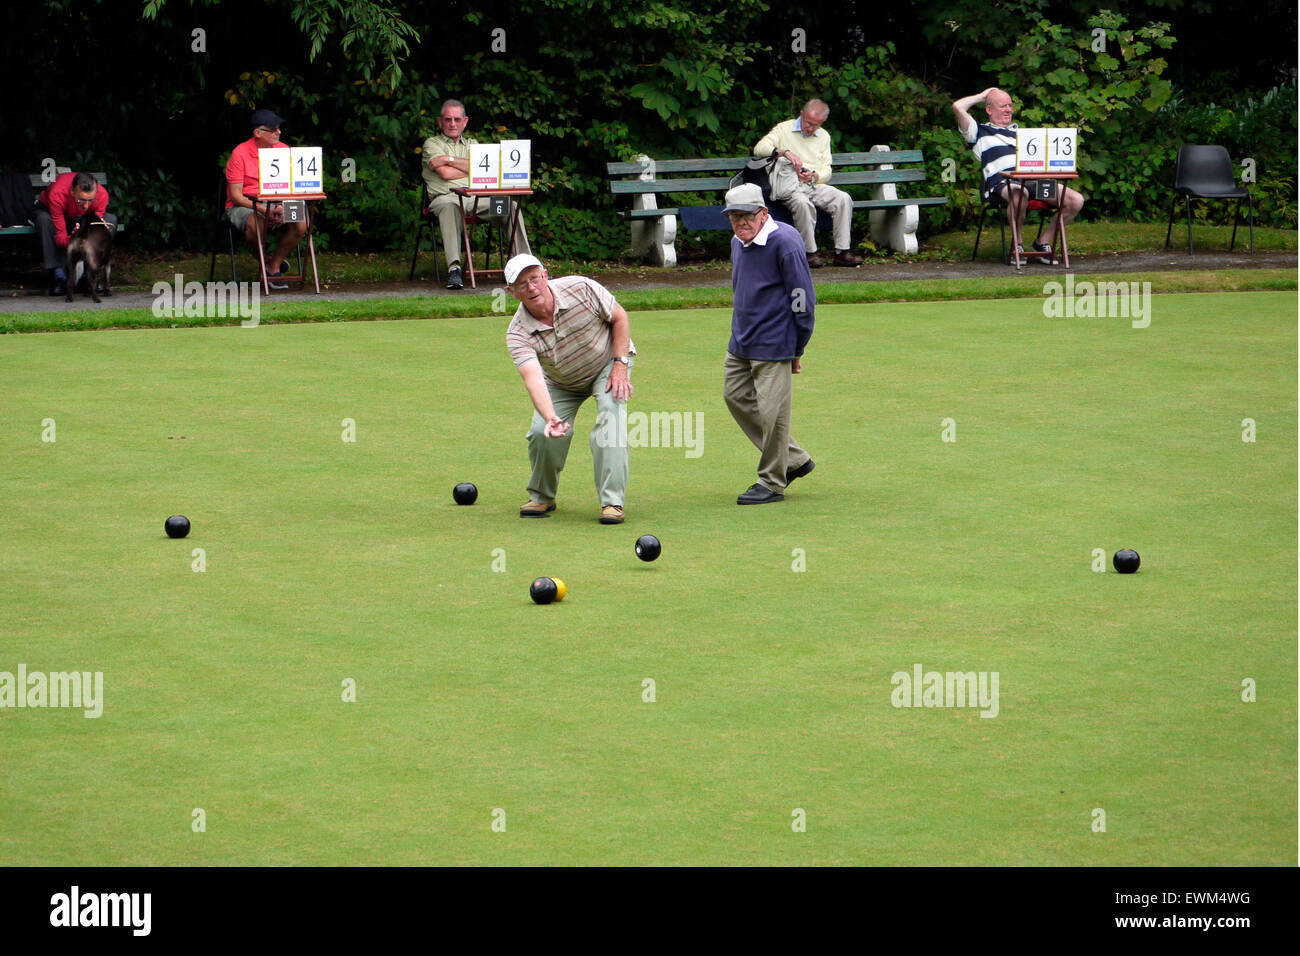 Männer spielen Schüsseln auf eine Krone Bowling Green, das Match war in Queens Park, Bolton, Lancashire, Greater Manchester, England UK. foto DON TONGE gespielt Stockfoto